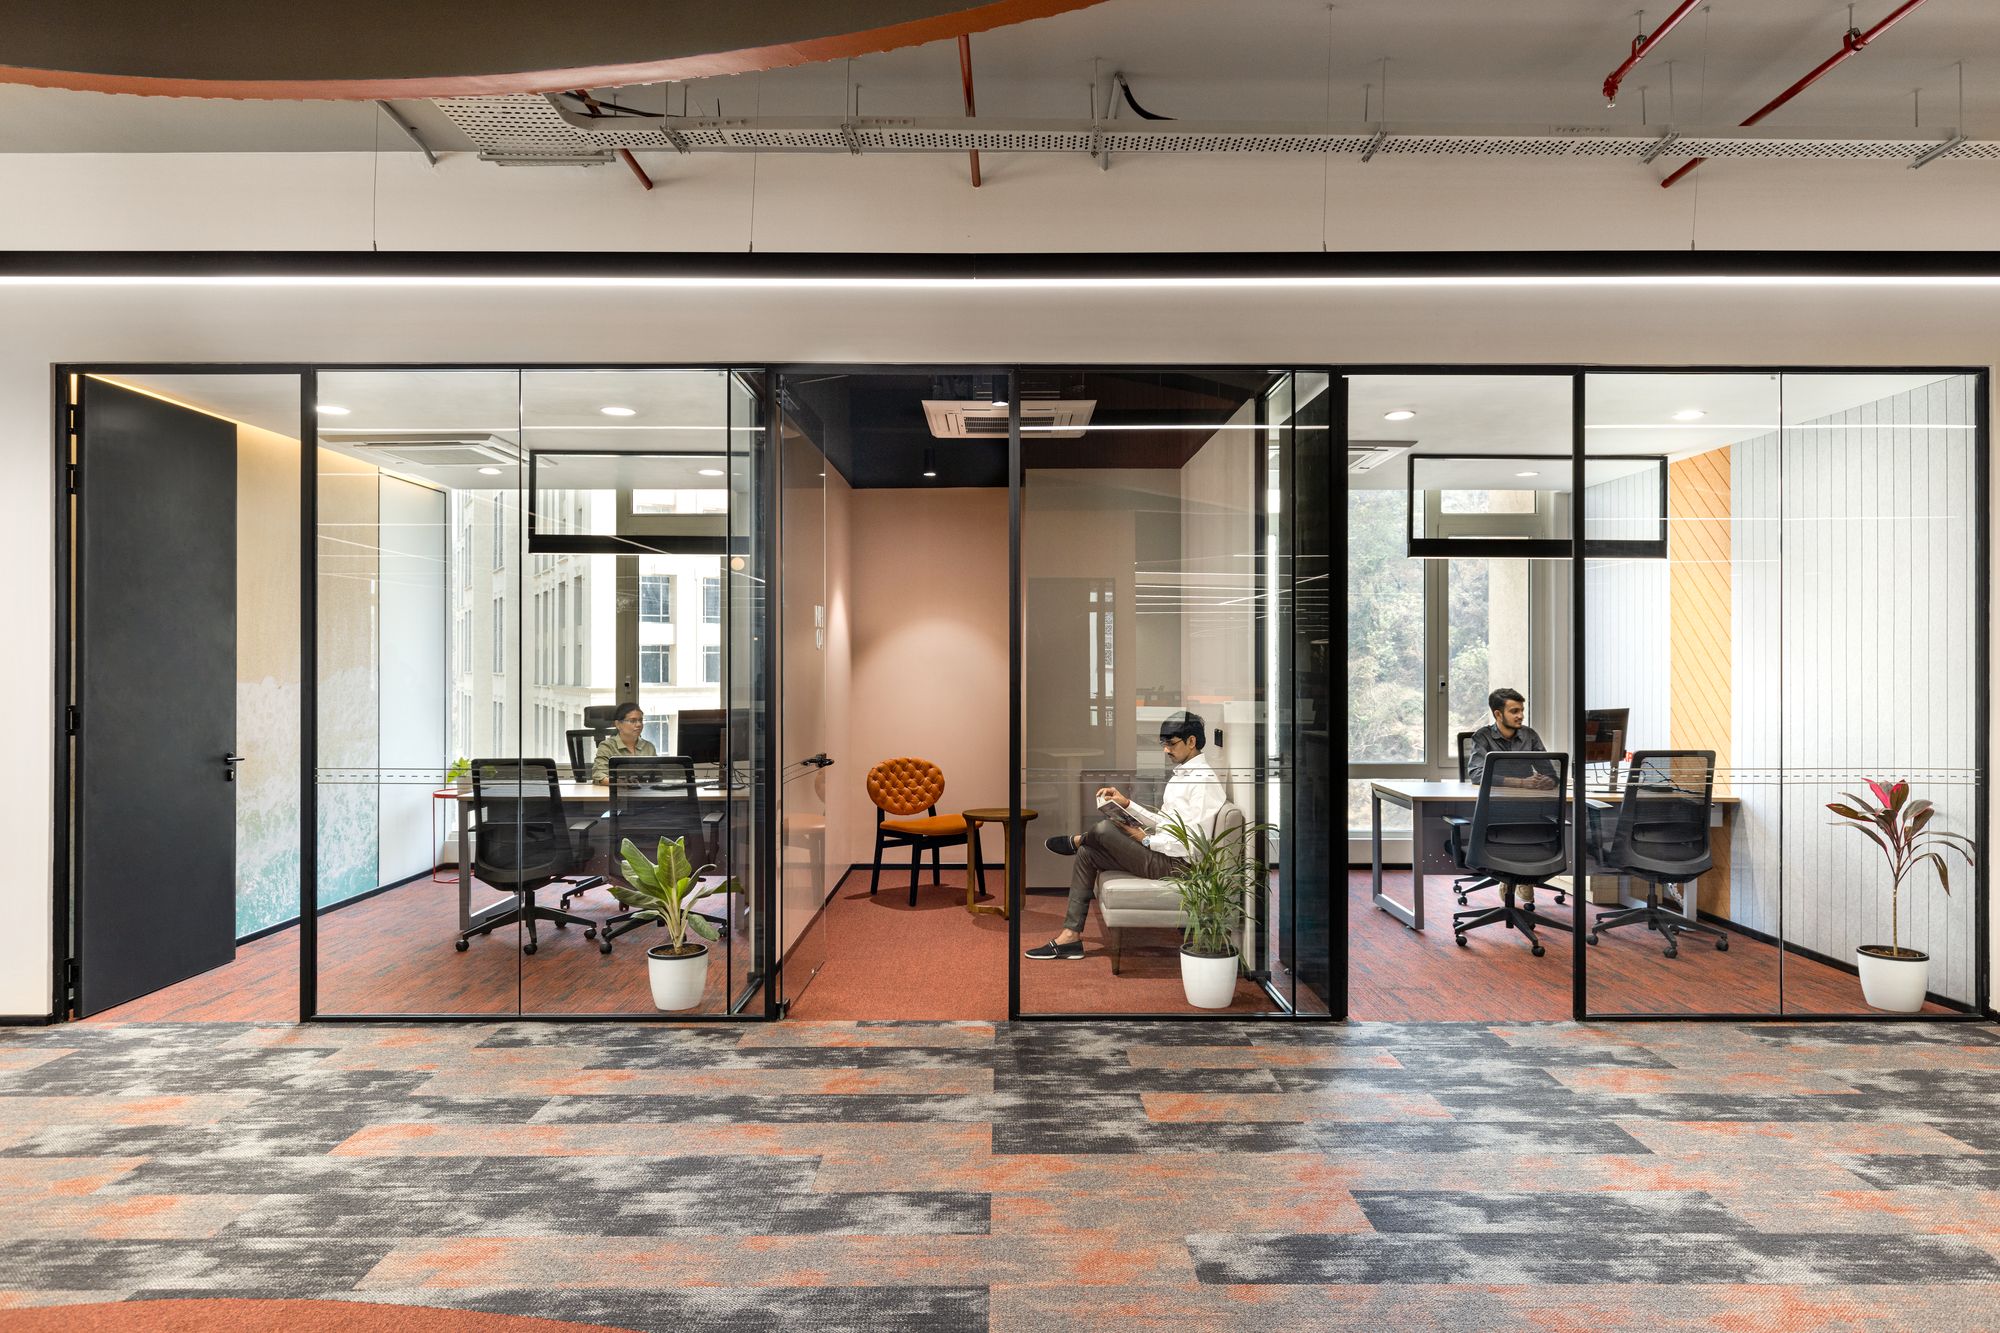 图片[5]|RXO办公室——孟买|ART-Arrakis | 建筑室内设计的创新与灵感